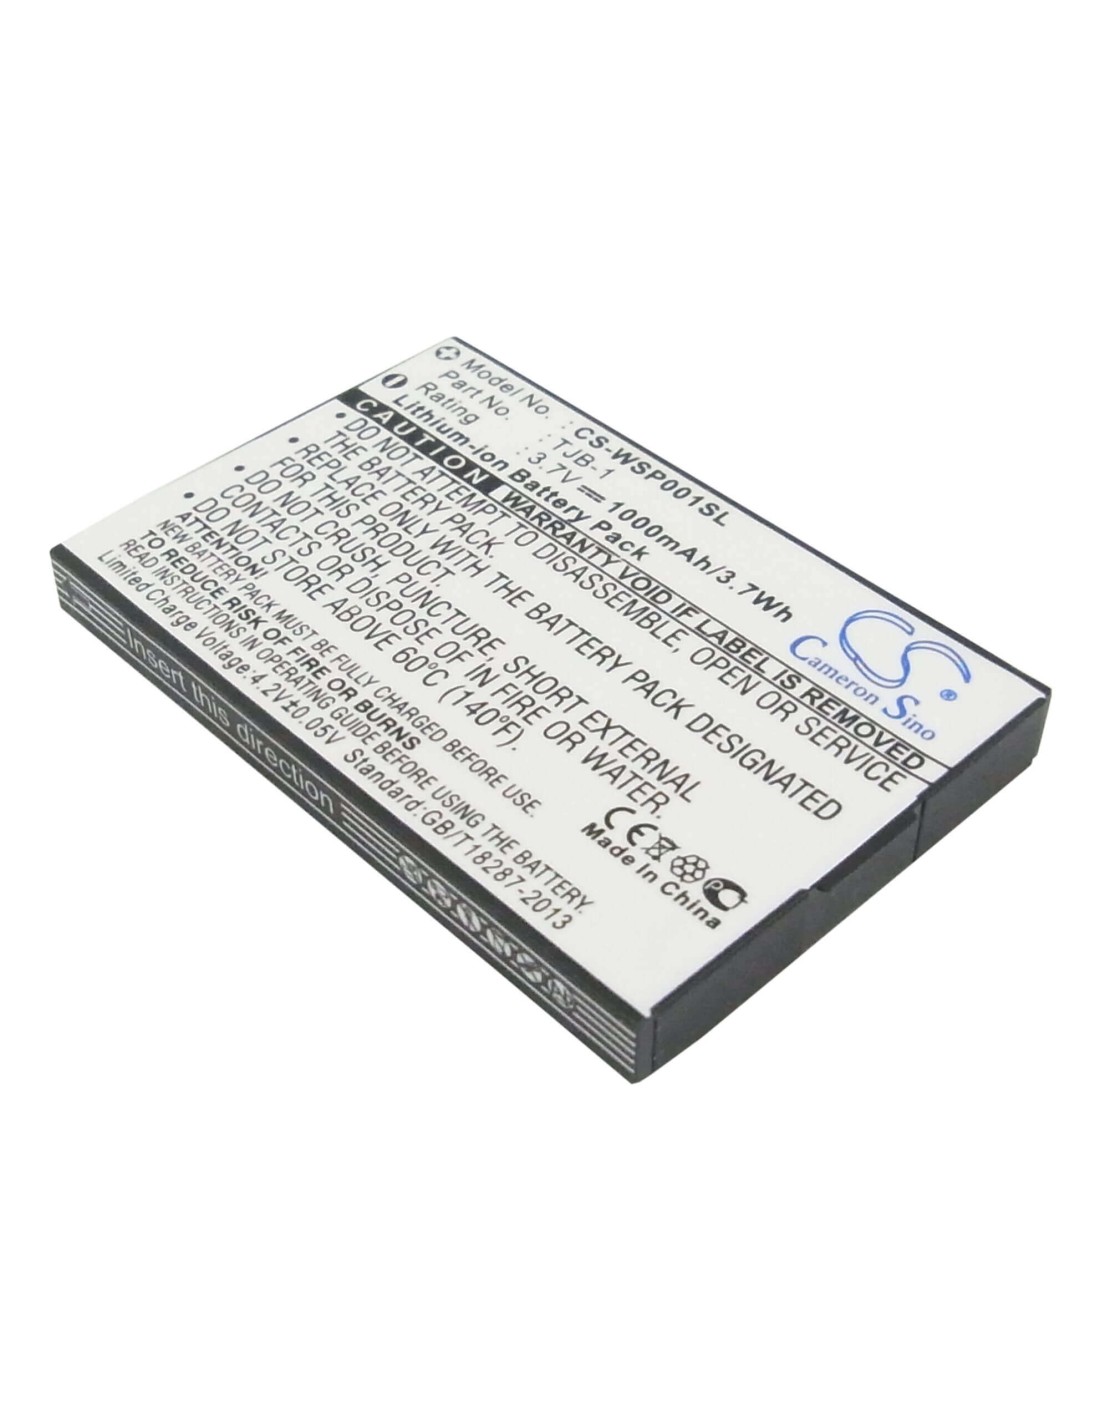 Battery for Binatone B200, BB200, Speakeasy Mobile Plus 3.7V, 1000mAh - 3.70Wh